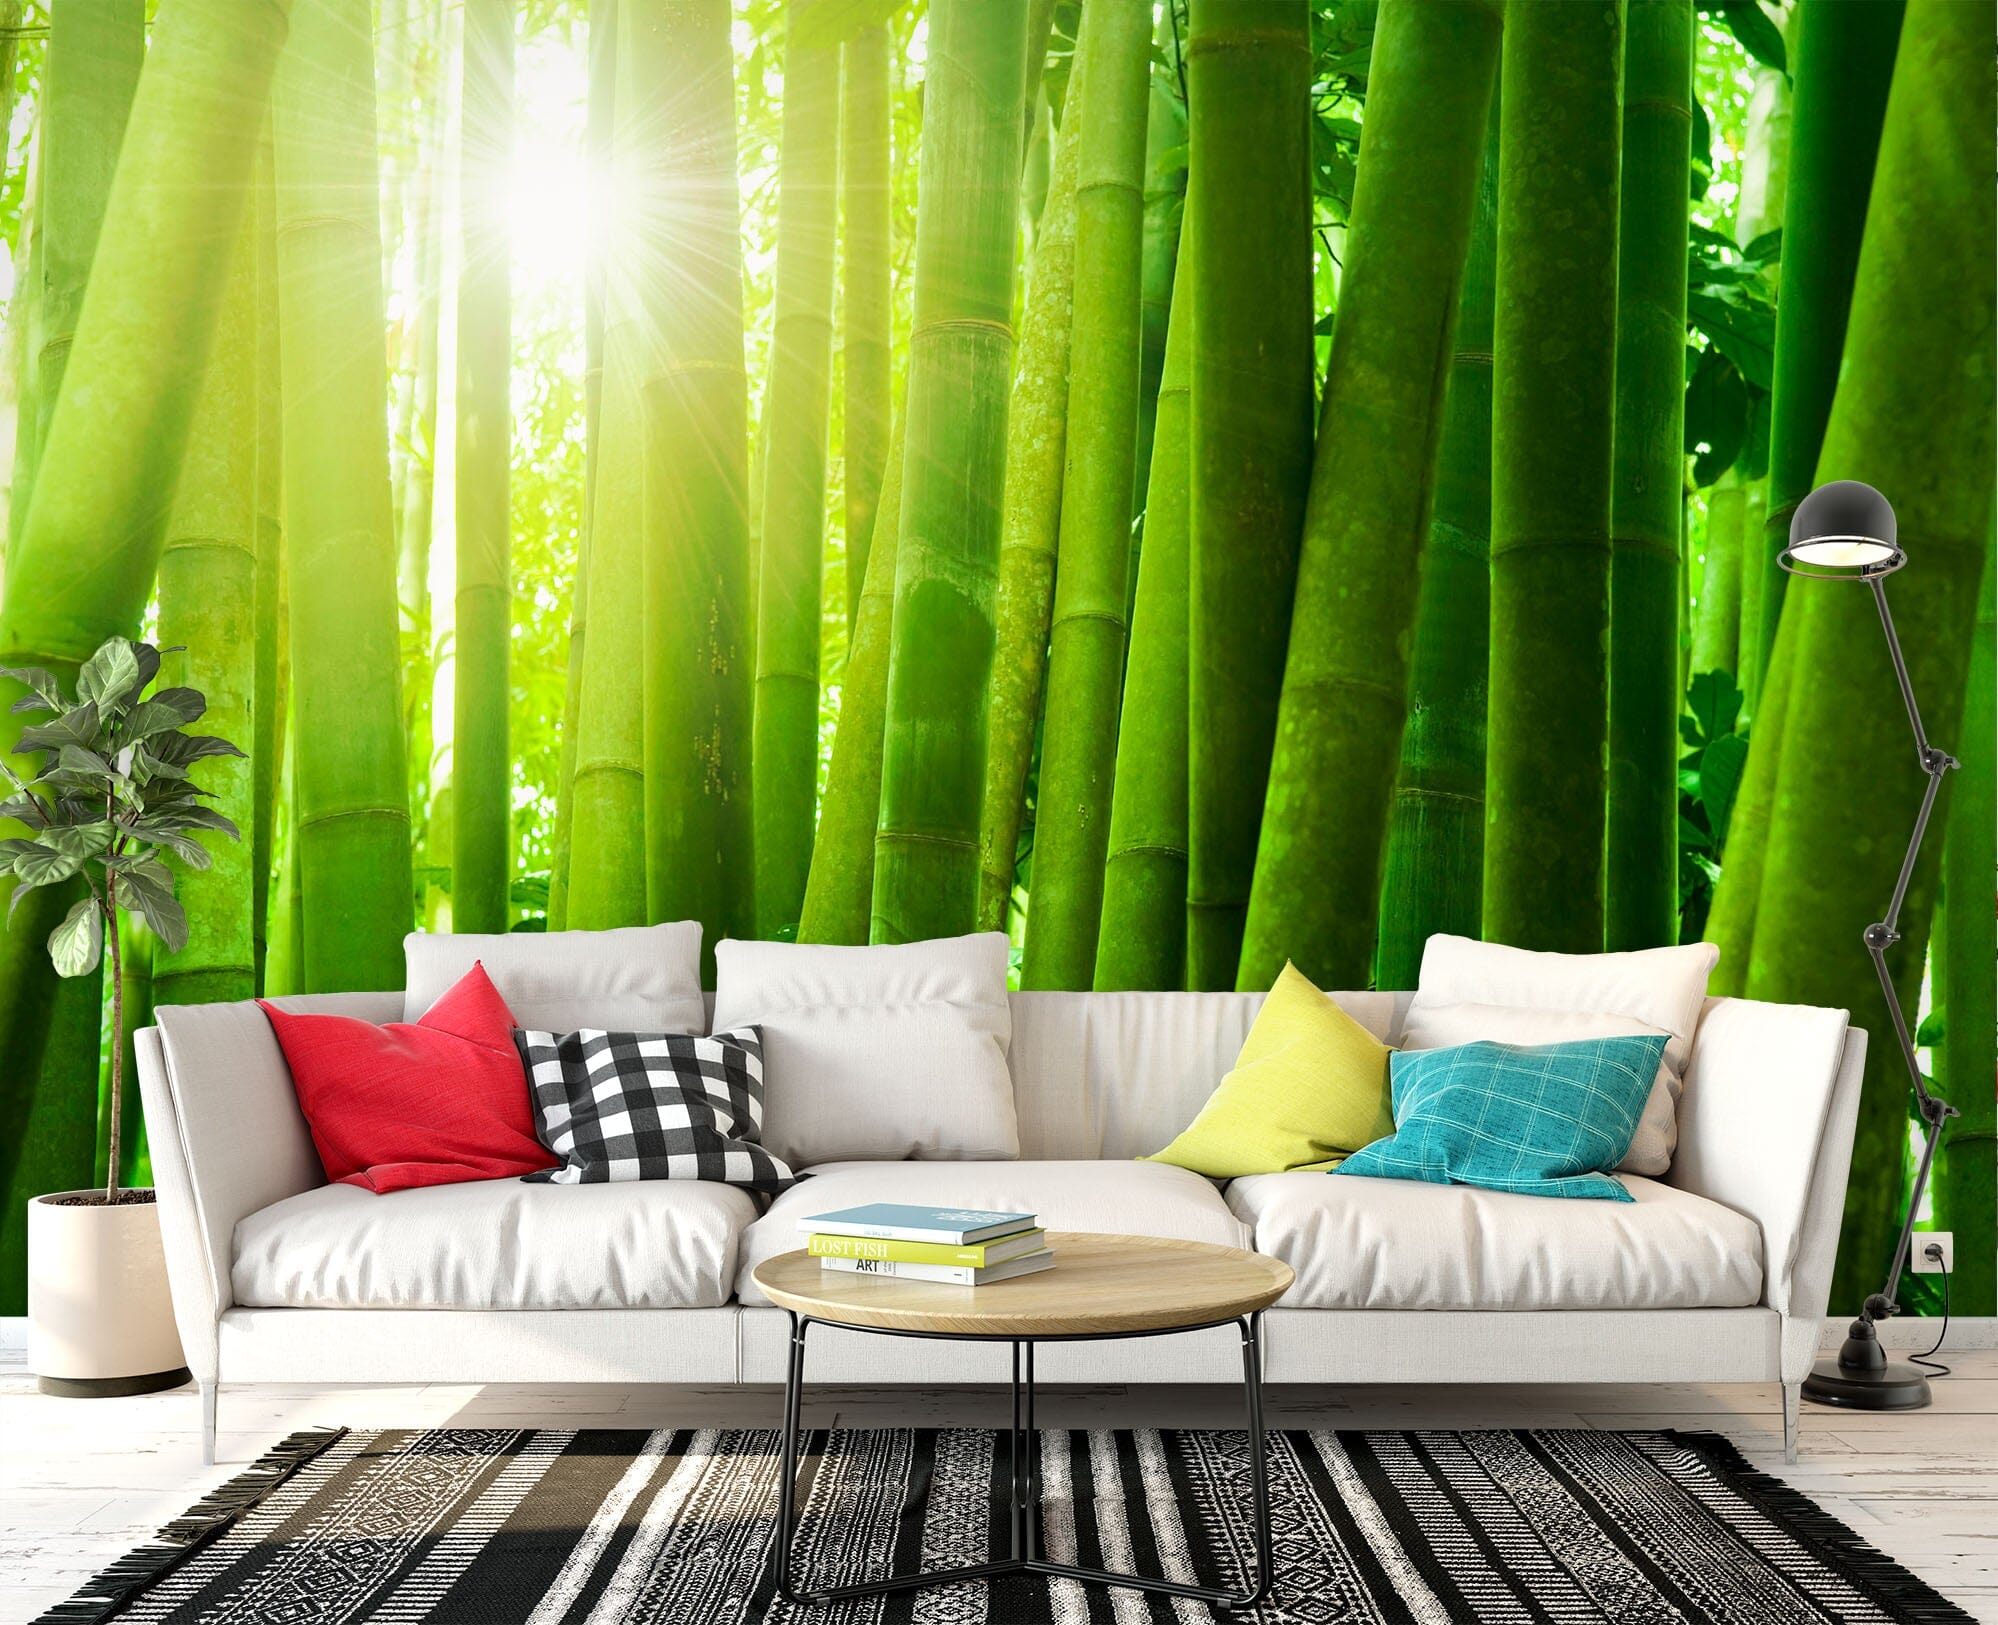 3D Green Bamboo Forest 1405 Wall Murals Wallpaper AJ Wallpaper 2 